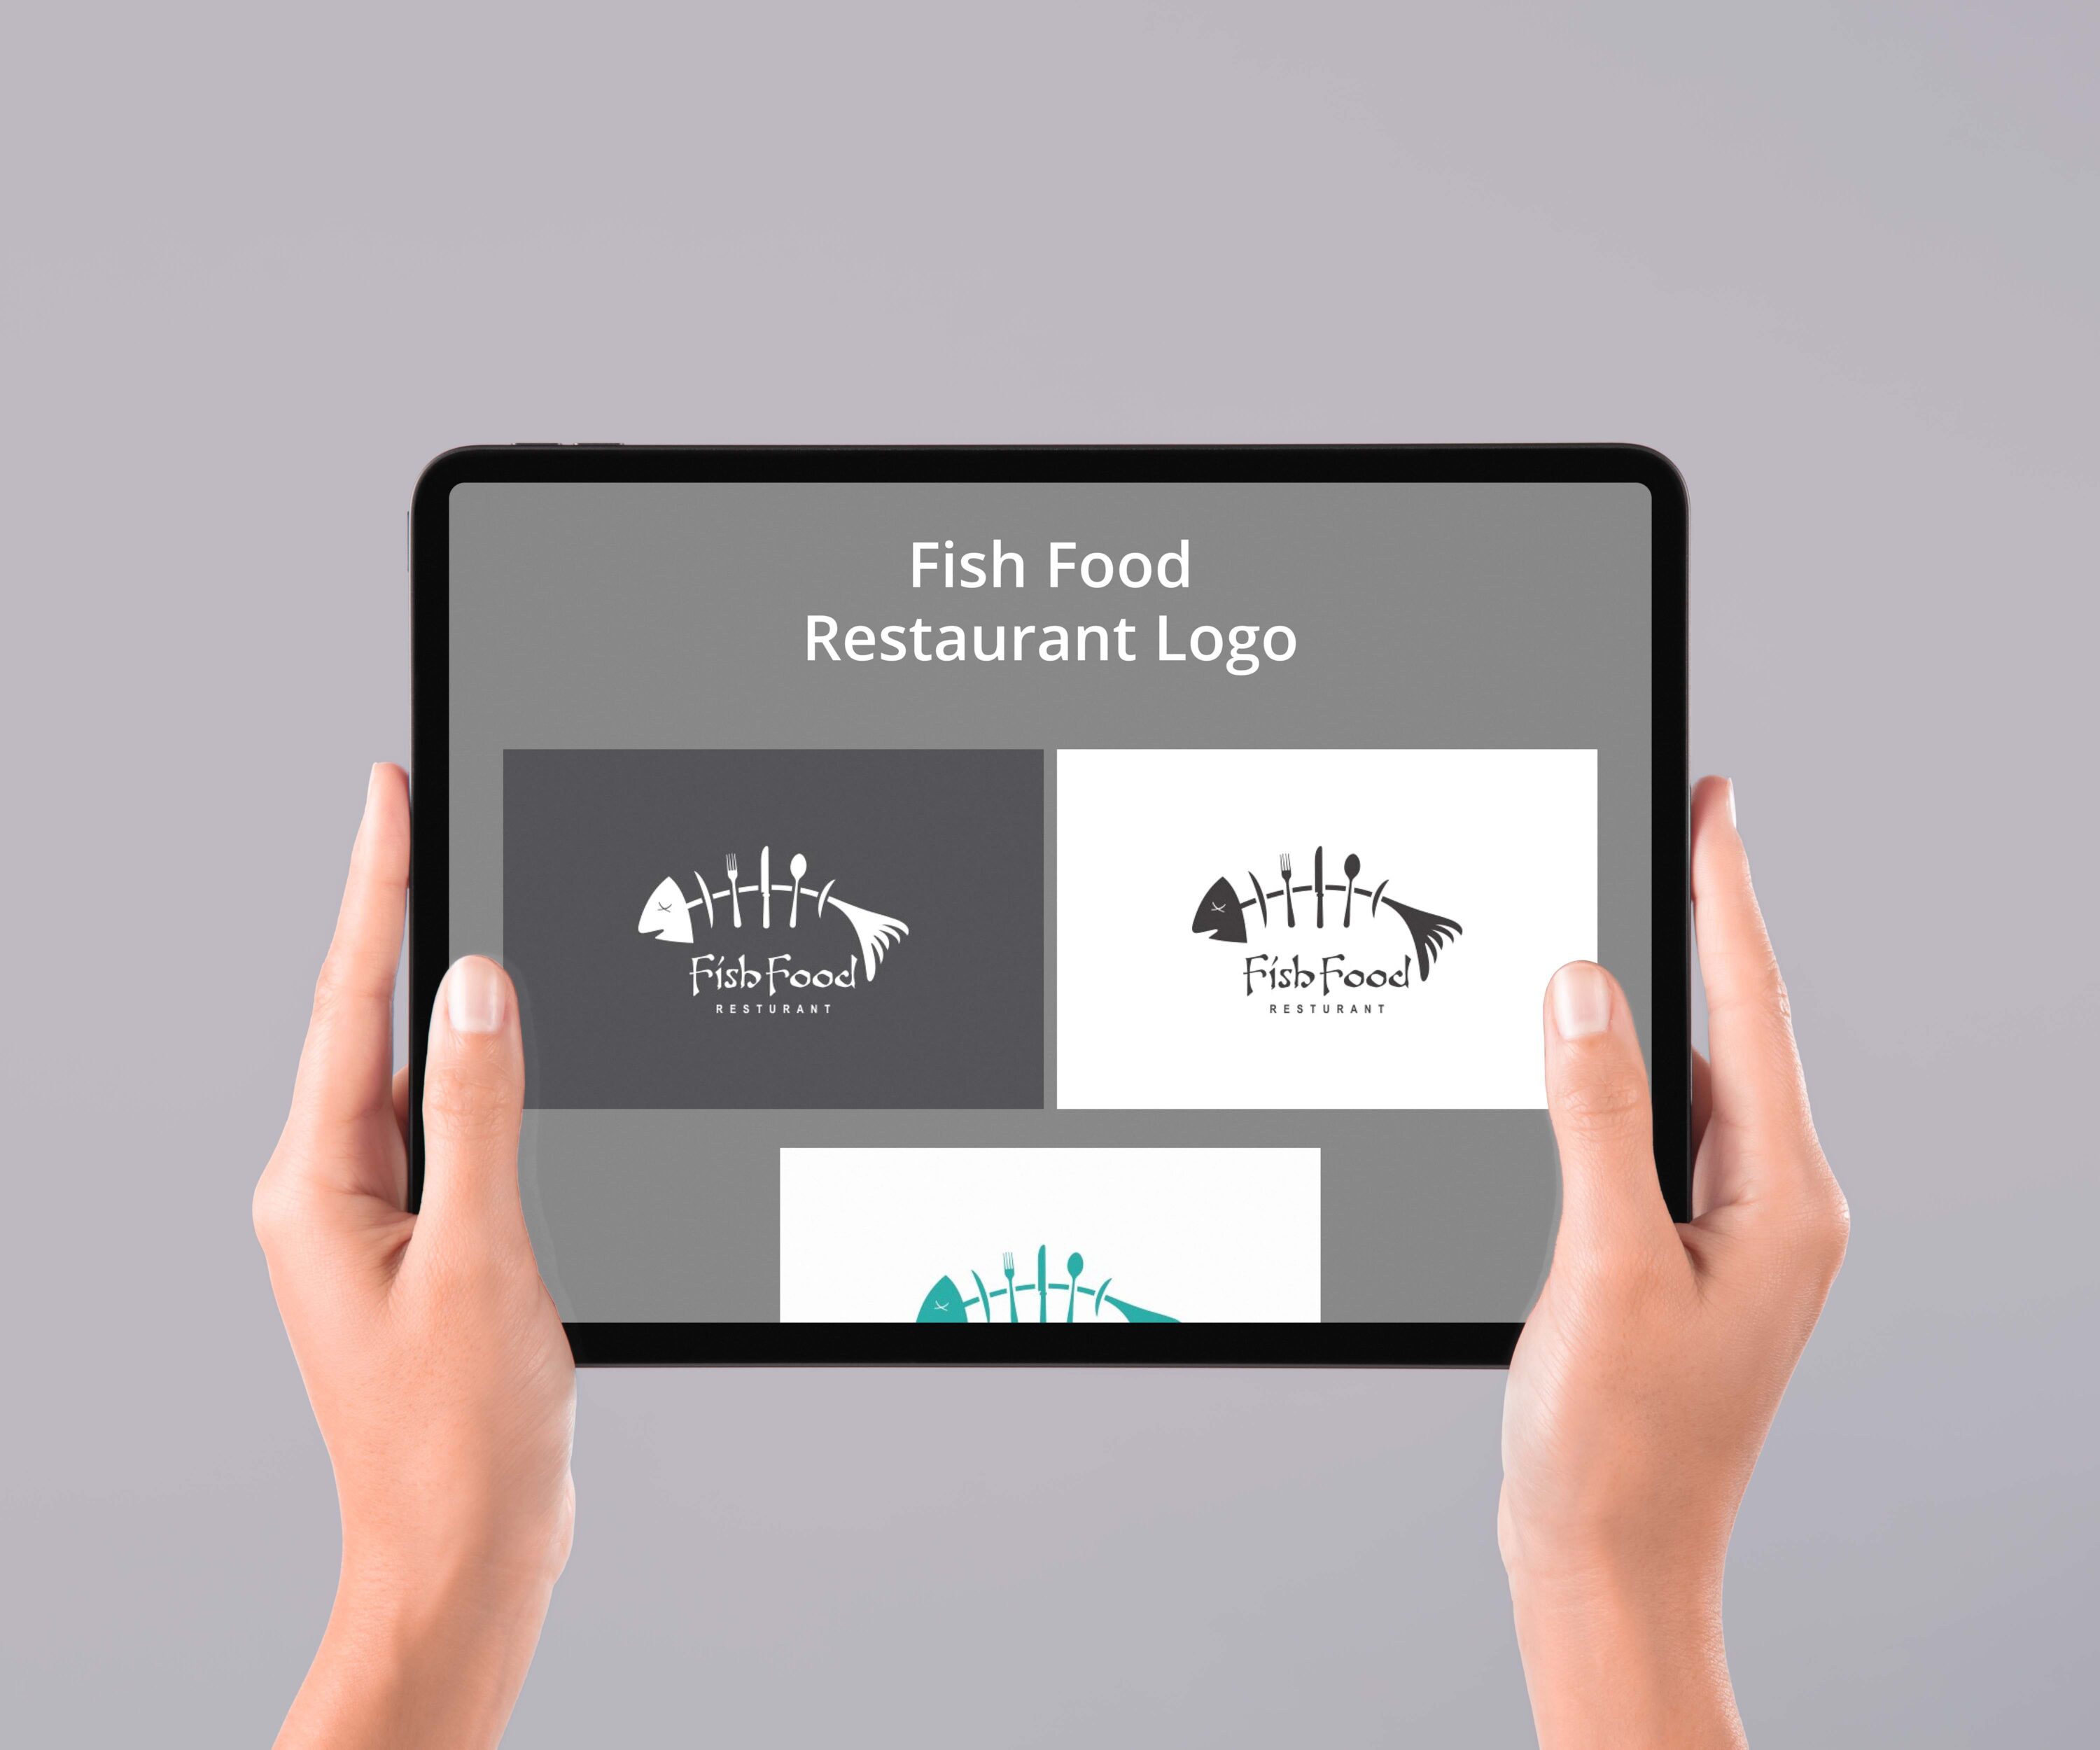 Fish Food Restaurant Logo - tablet.